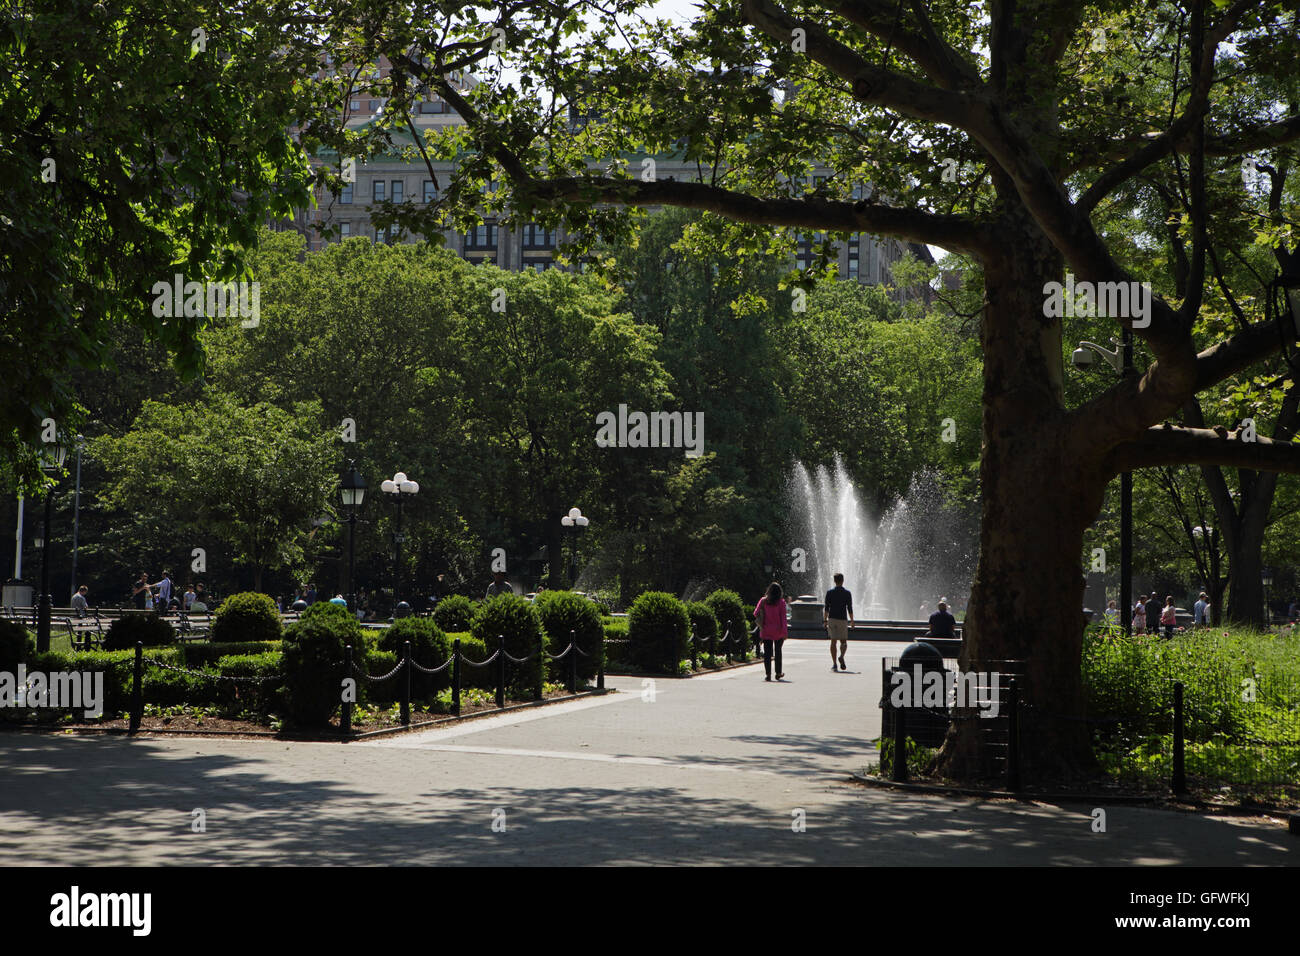 La gente camminare nei pressi della fontana di Washington Square Park di New York, sotto gli alberi Foto Stock